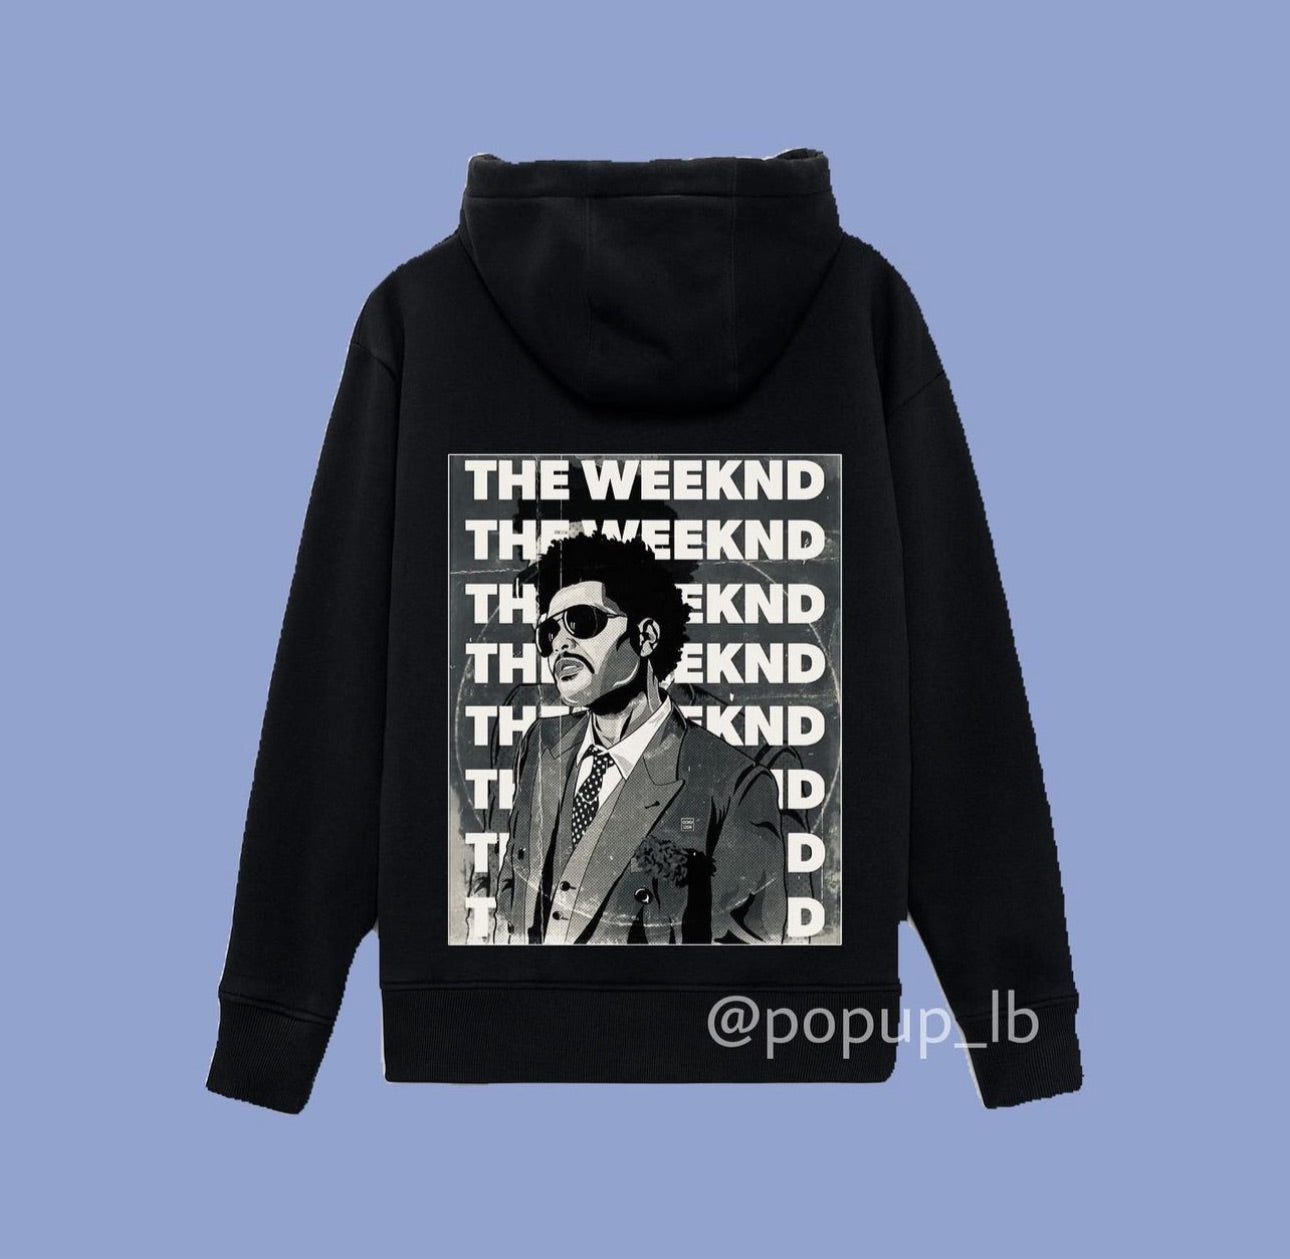 The Weeknd Hoodie – Pop up